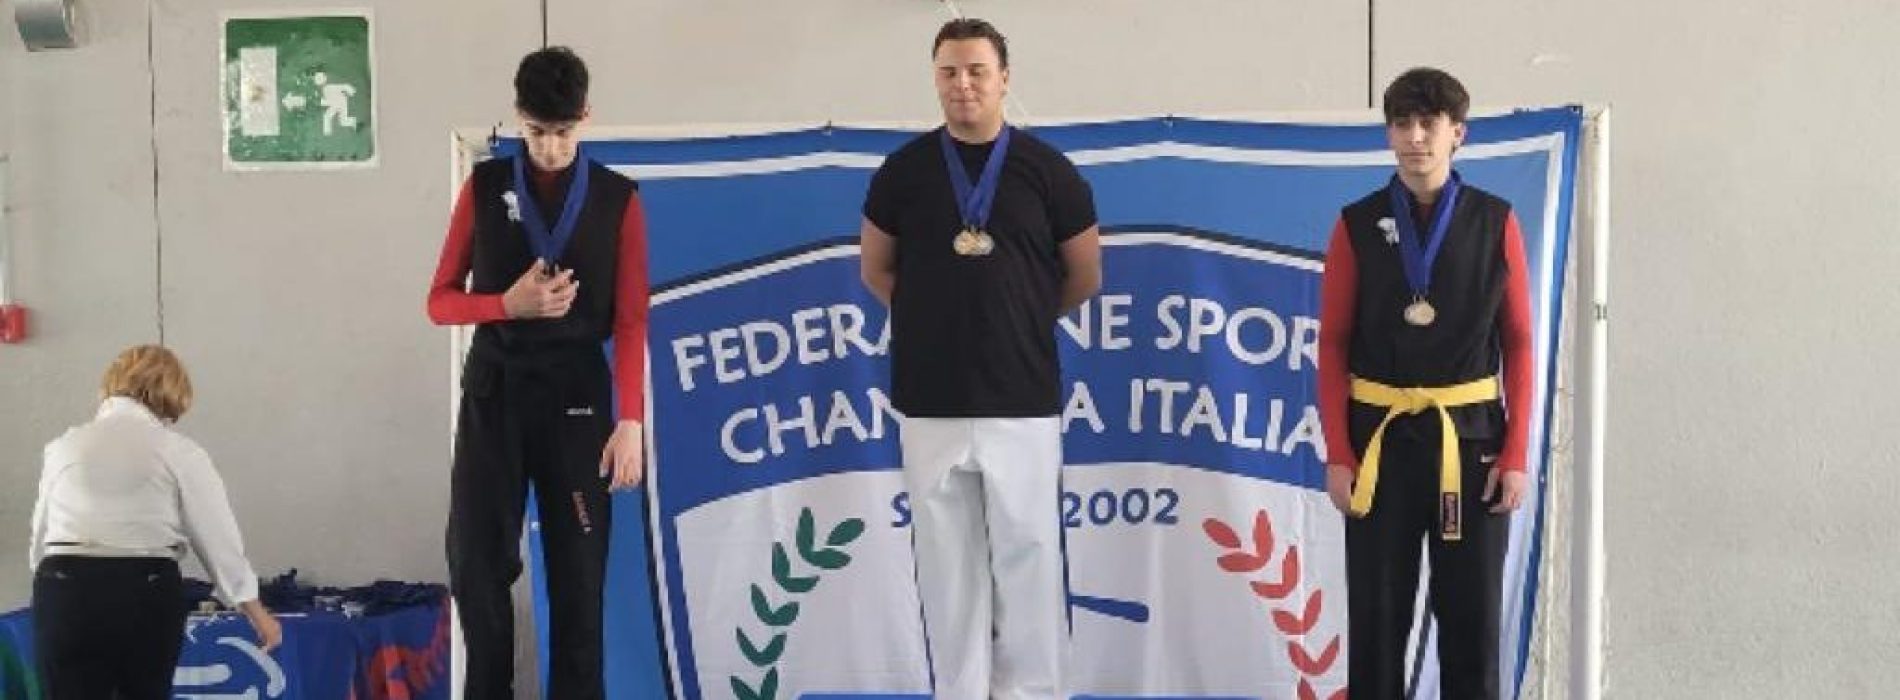 Campionato italiano Chambara, vince studente del Giordani